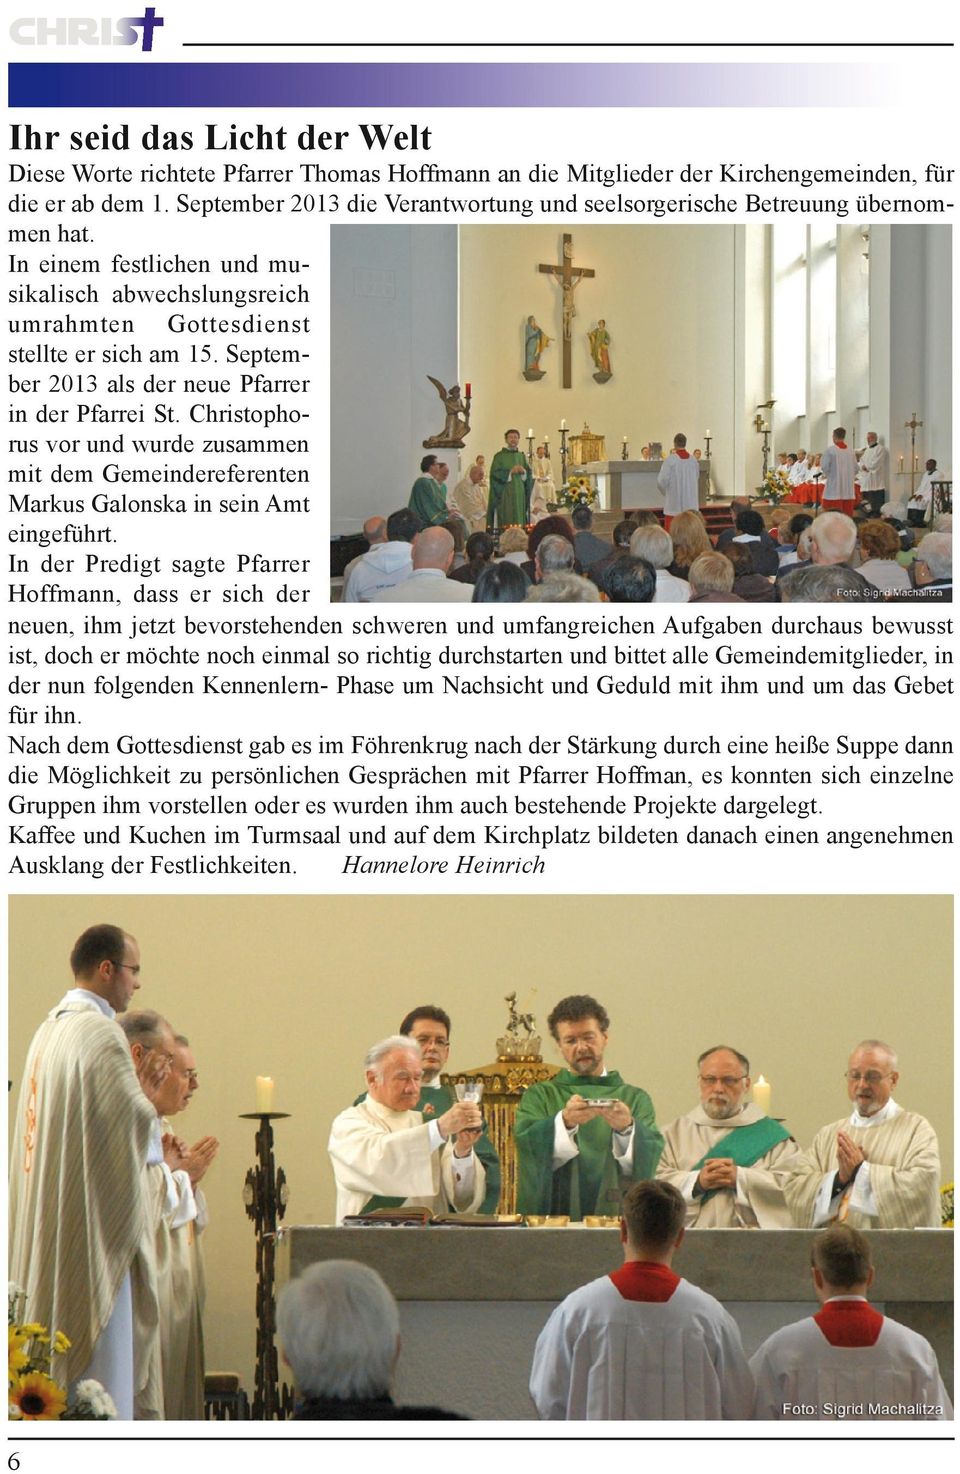 September 2013 als der neue Pfarrer in der Pfarrei St. Christophorus vor und wurde zusammen mit dem Gemeindereferenten Markus Galonska in sein Amt eingeführt.